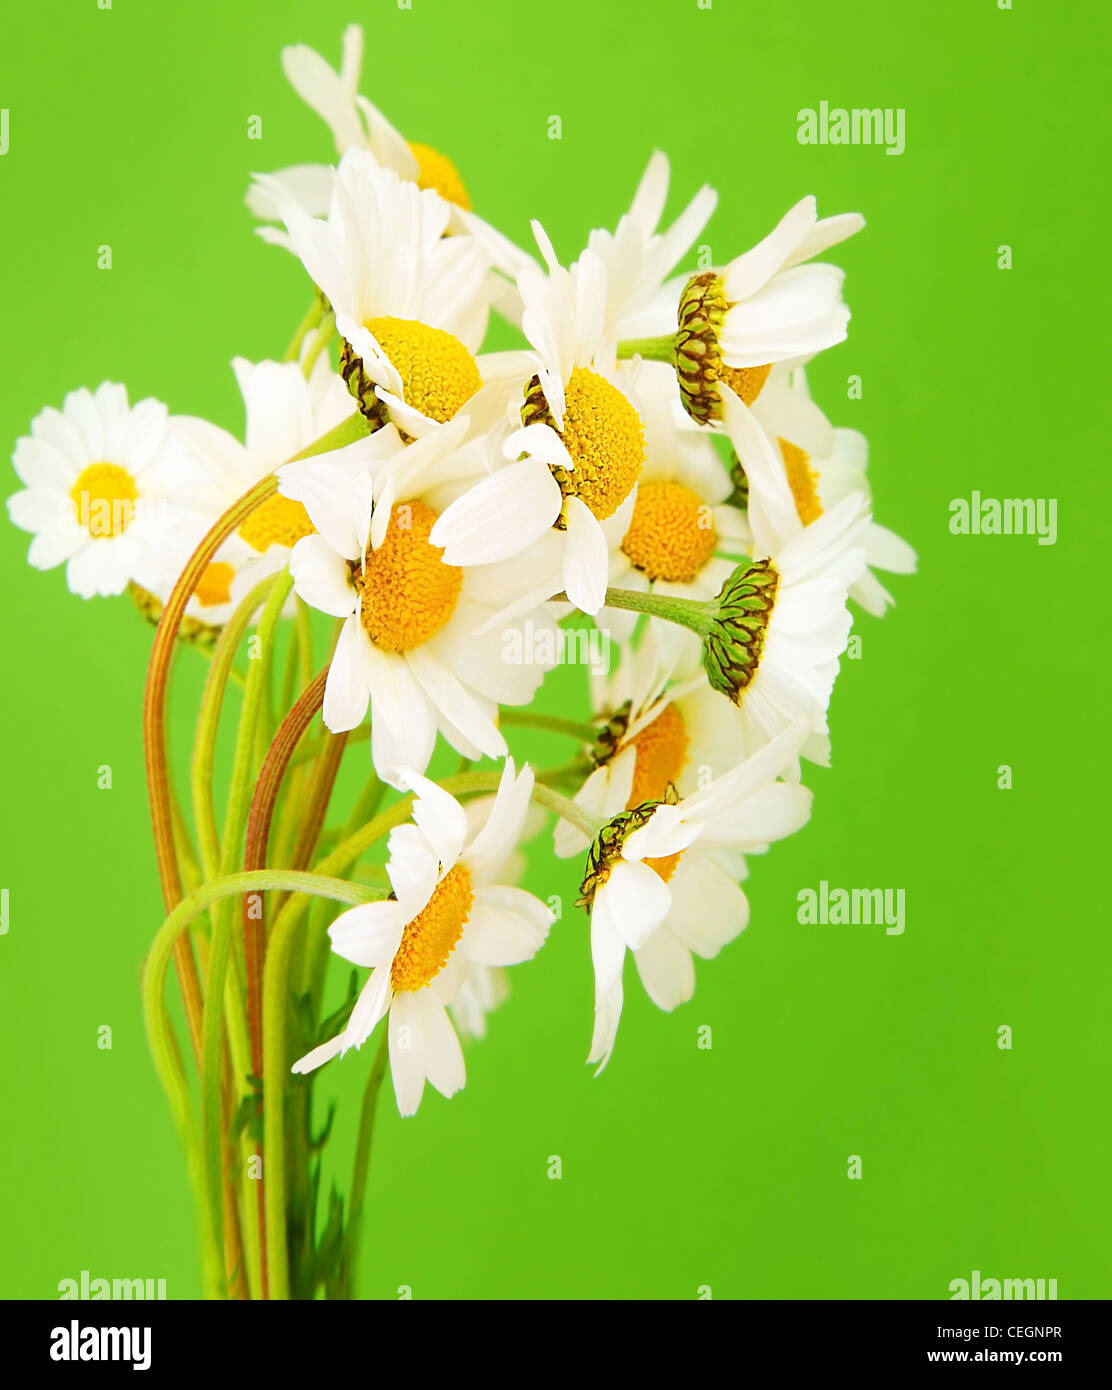 Frische Gänseblümchen Blumen Blumenstrauß über grünem Hintergrund isoliert Stockfoto